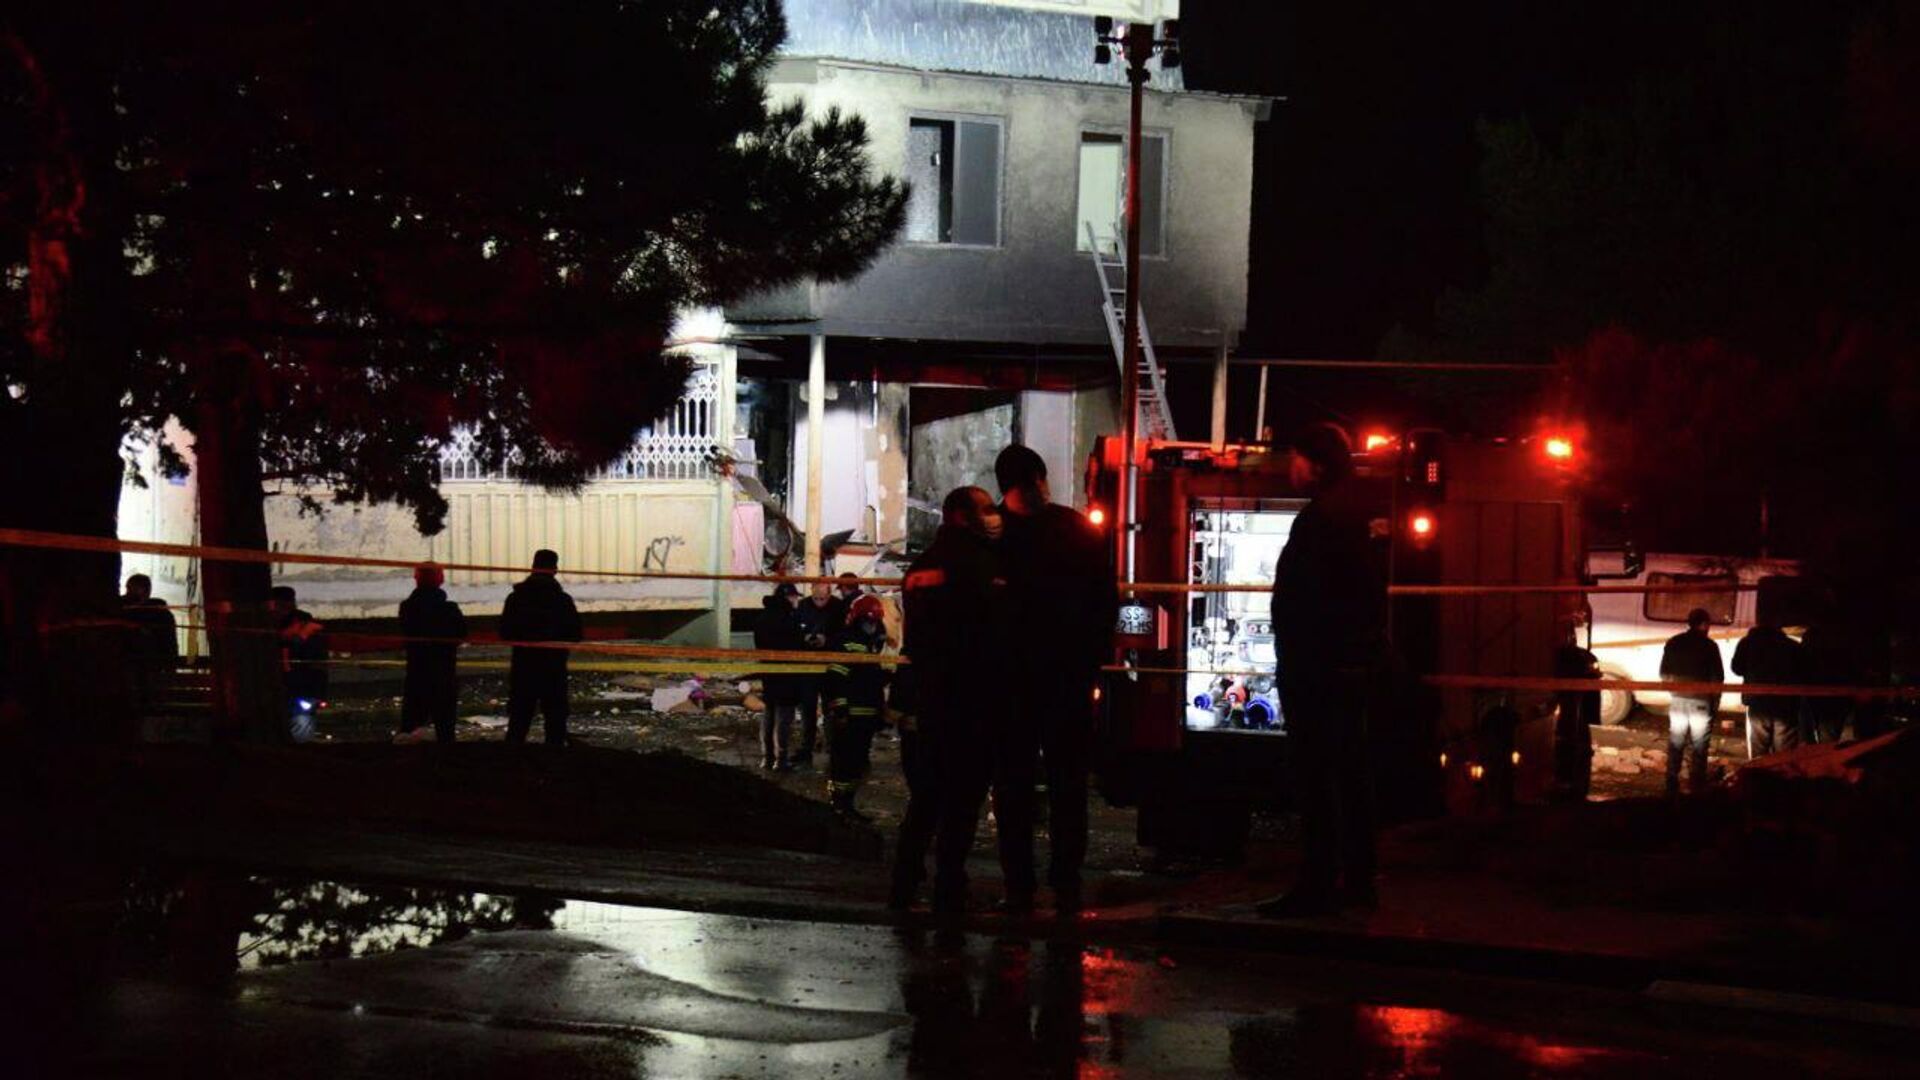 Взрыв бытового газа в жилом доме в районе Вазисубани в столице Грузии 19 декабря 2021 года - Sputnik Грузия, 1920, 19.12.2021